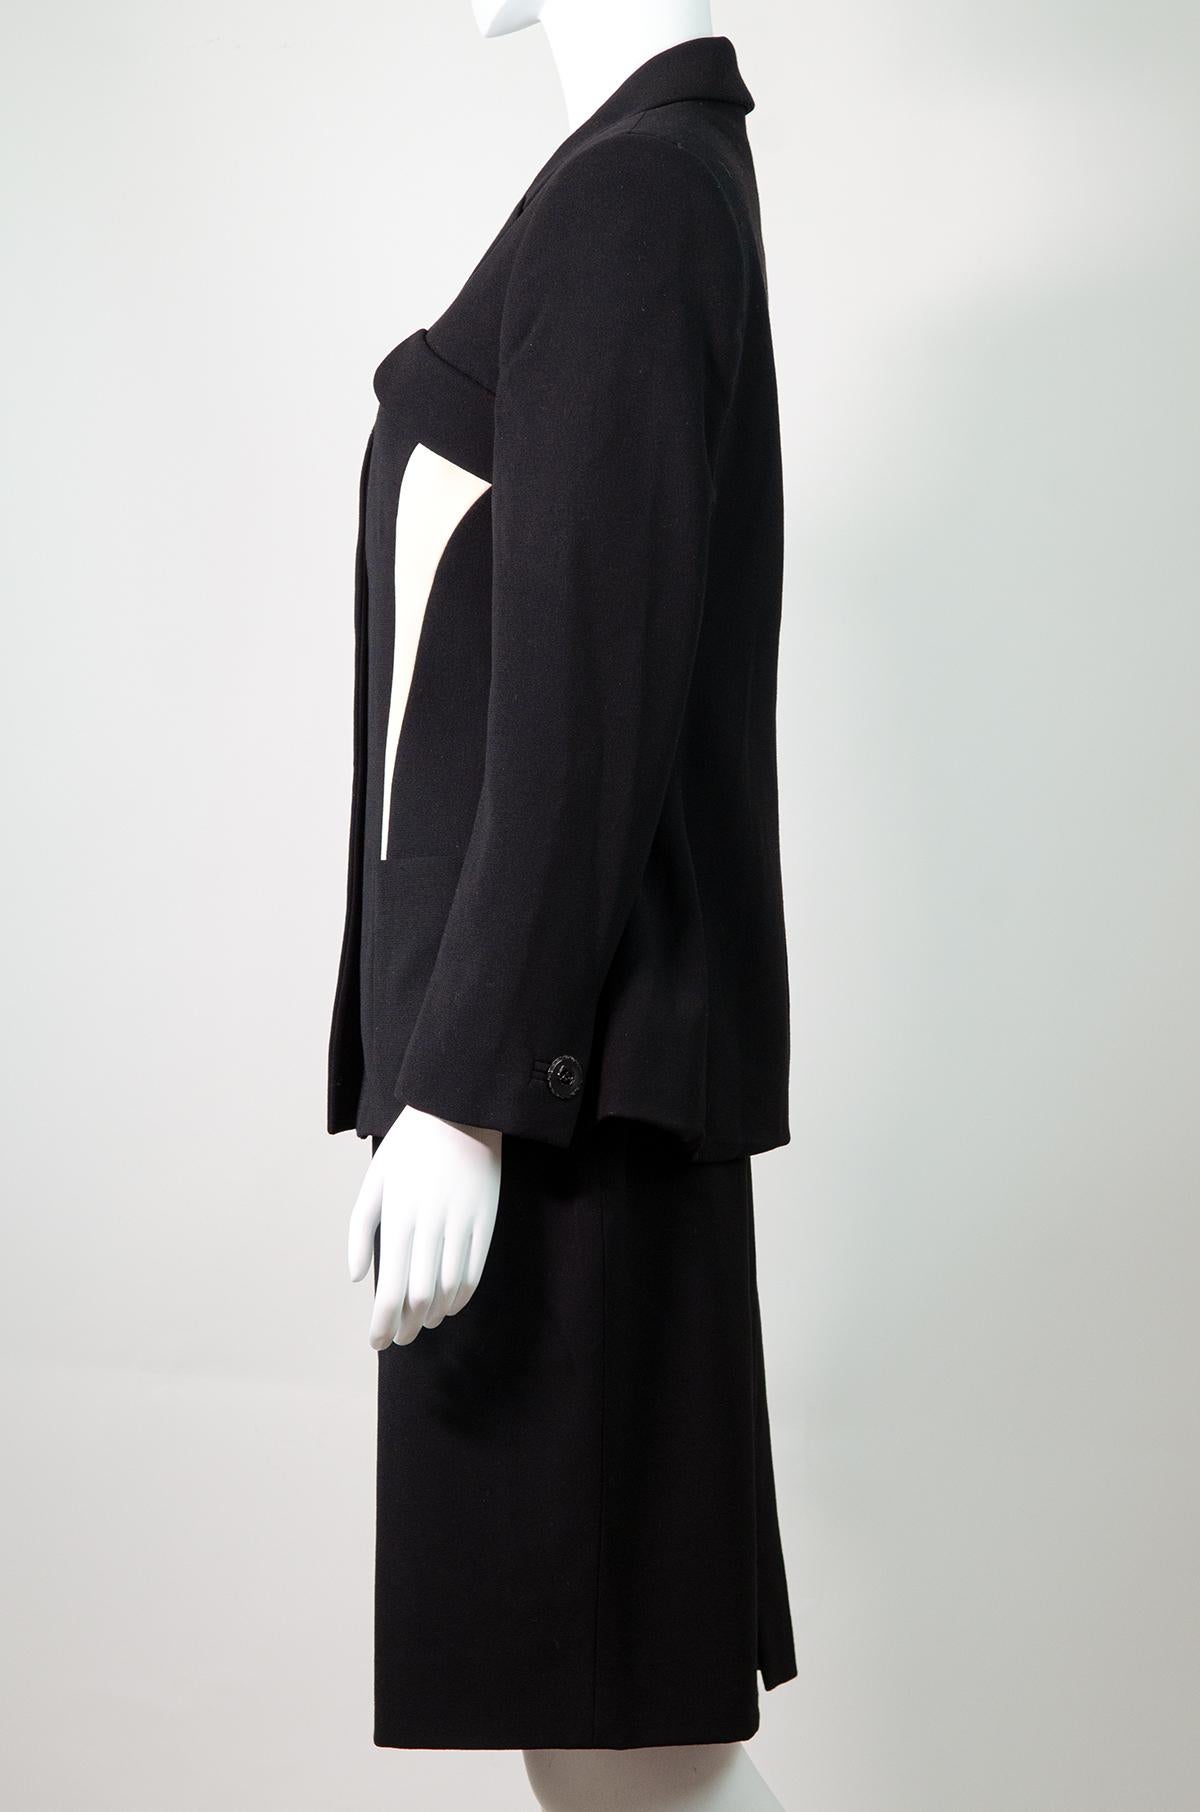 Women's VERSACE Vintage 1997 Contour Skirt Suit Gianni Versace Couture For Sale